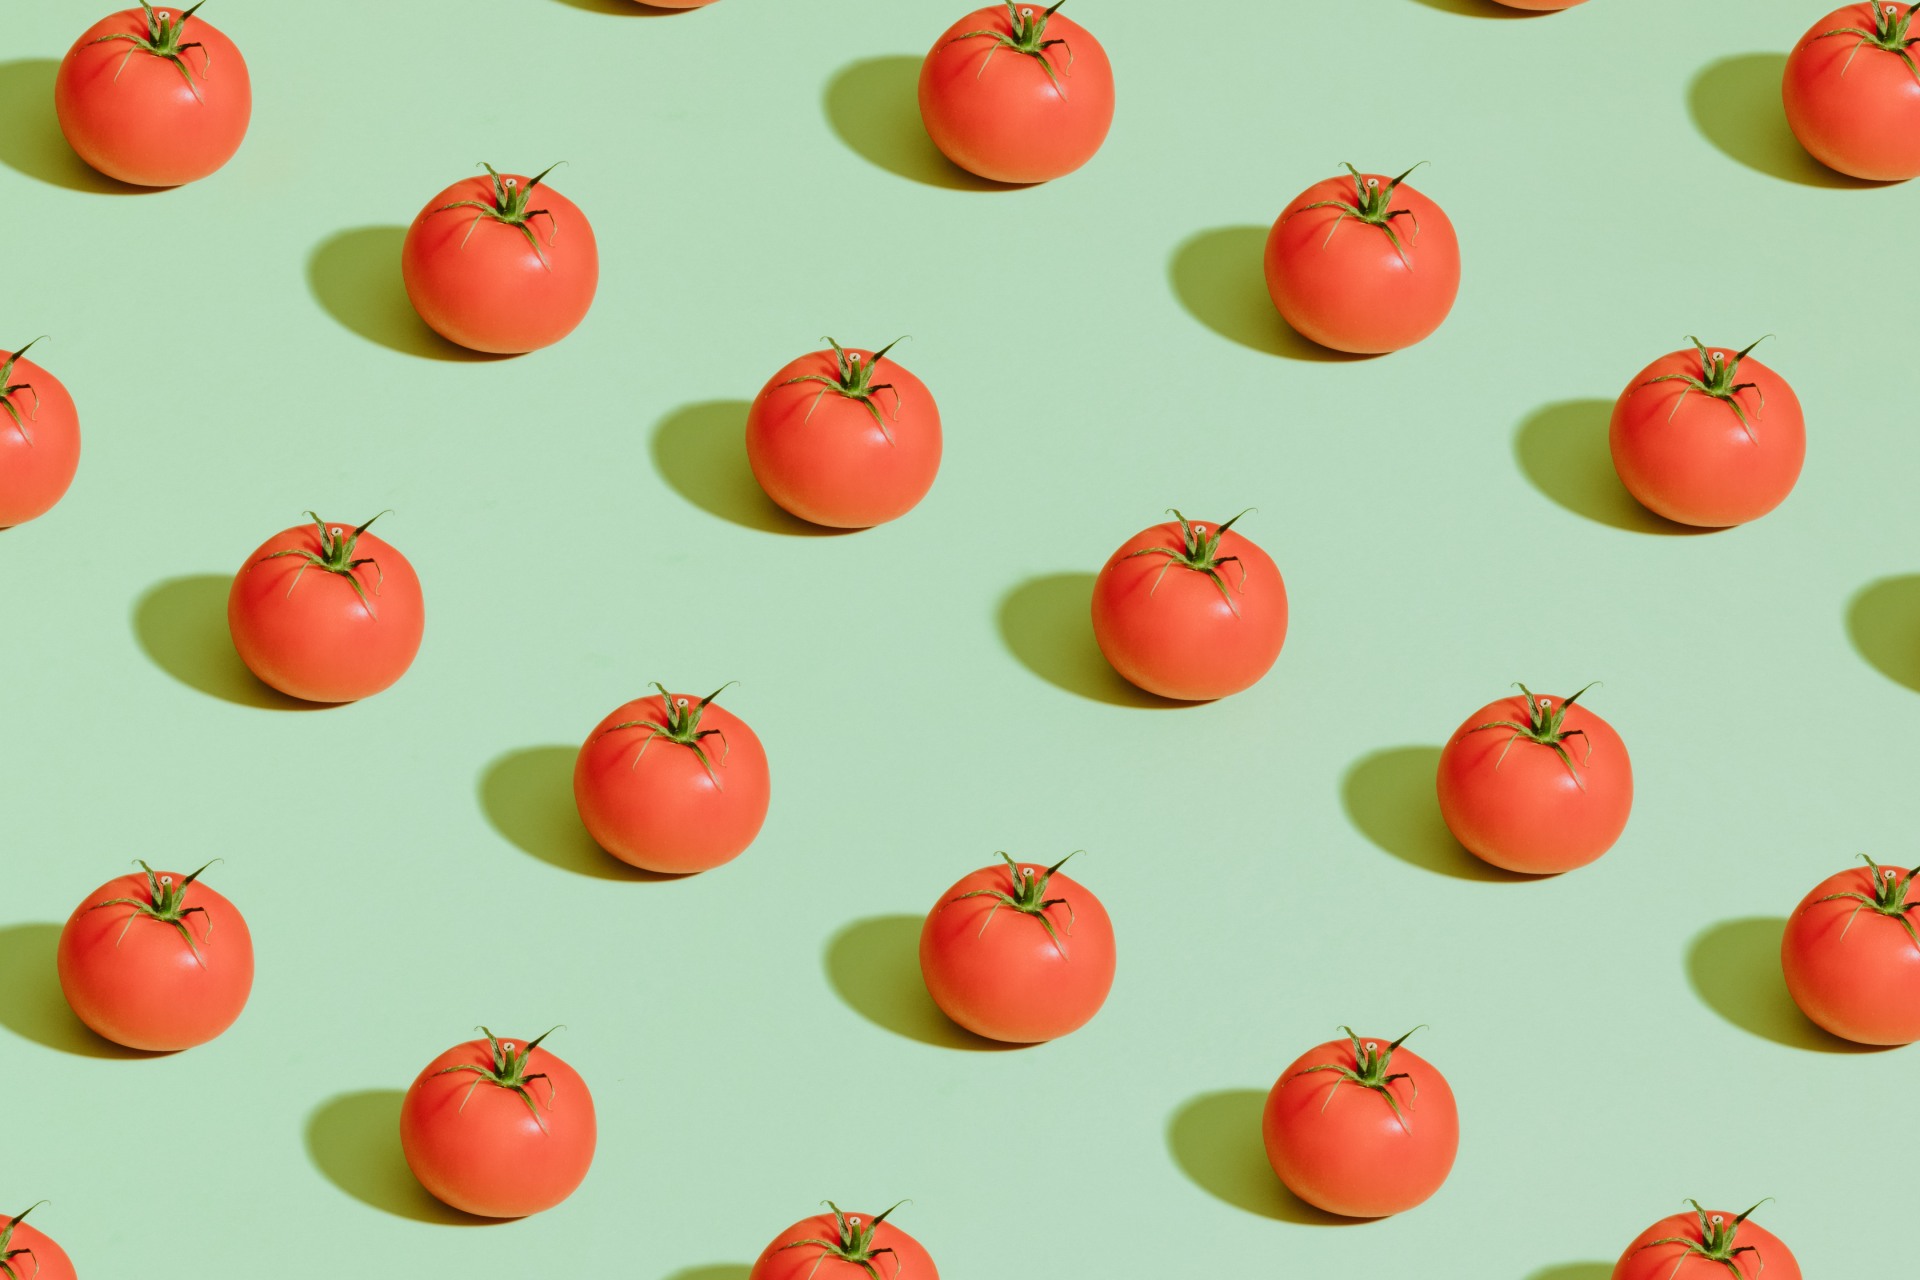 pomodorini rossi su uno sfondo verde chiaro